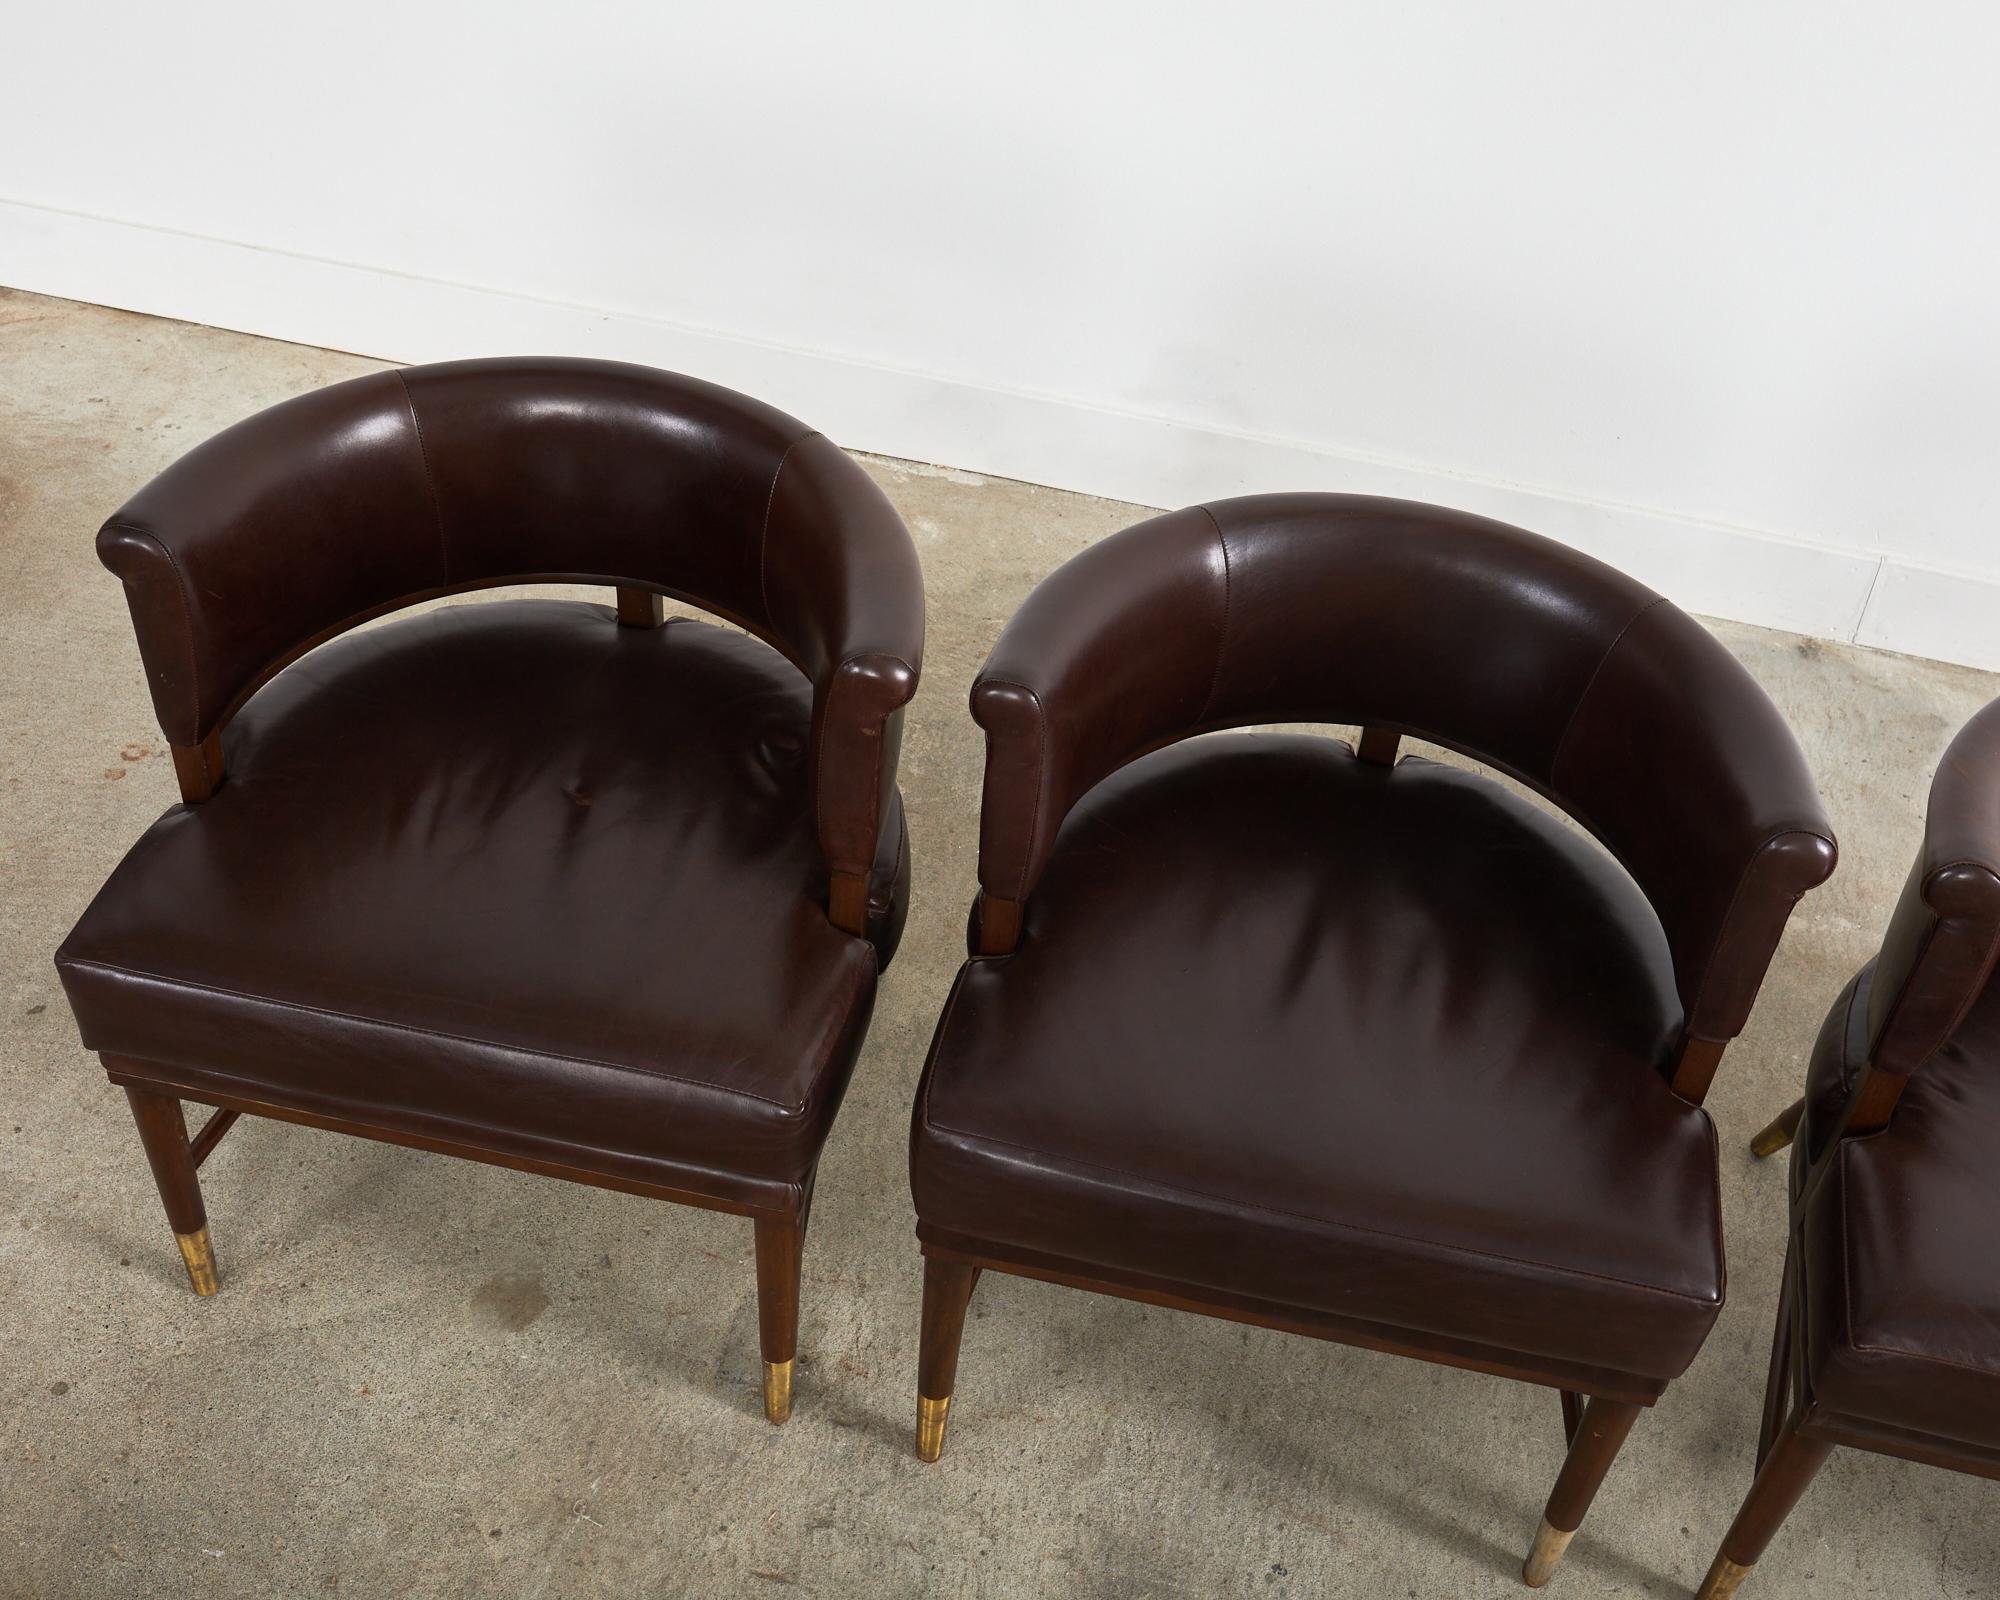 Satz von vier Dunbar Style Leder Barrel Back Lounge Chairs (Patiniert)